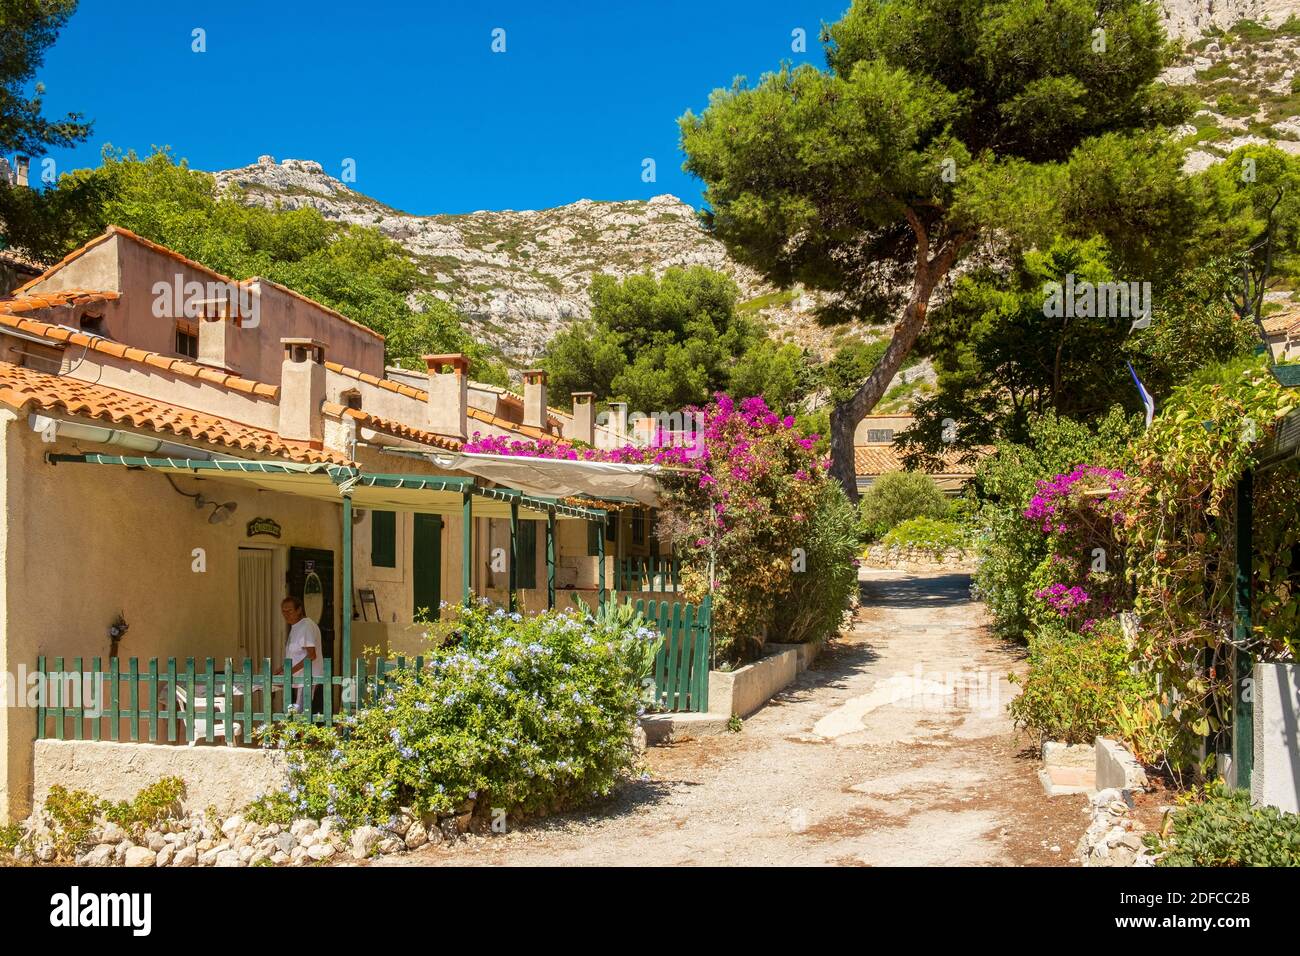 France, Bouches du Rhone, Marseille, the calanque de Sormiou, Calanques National Park Stock Photo